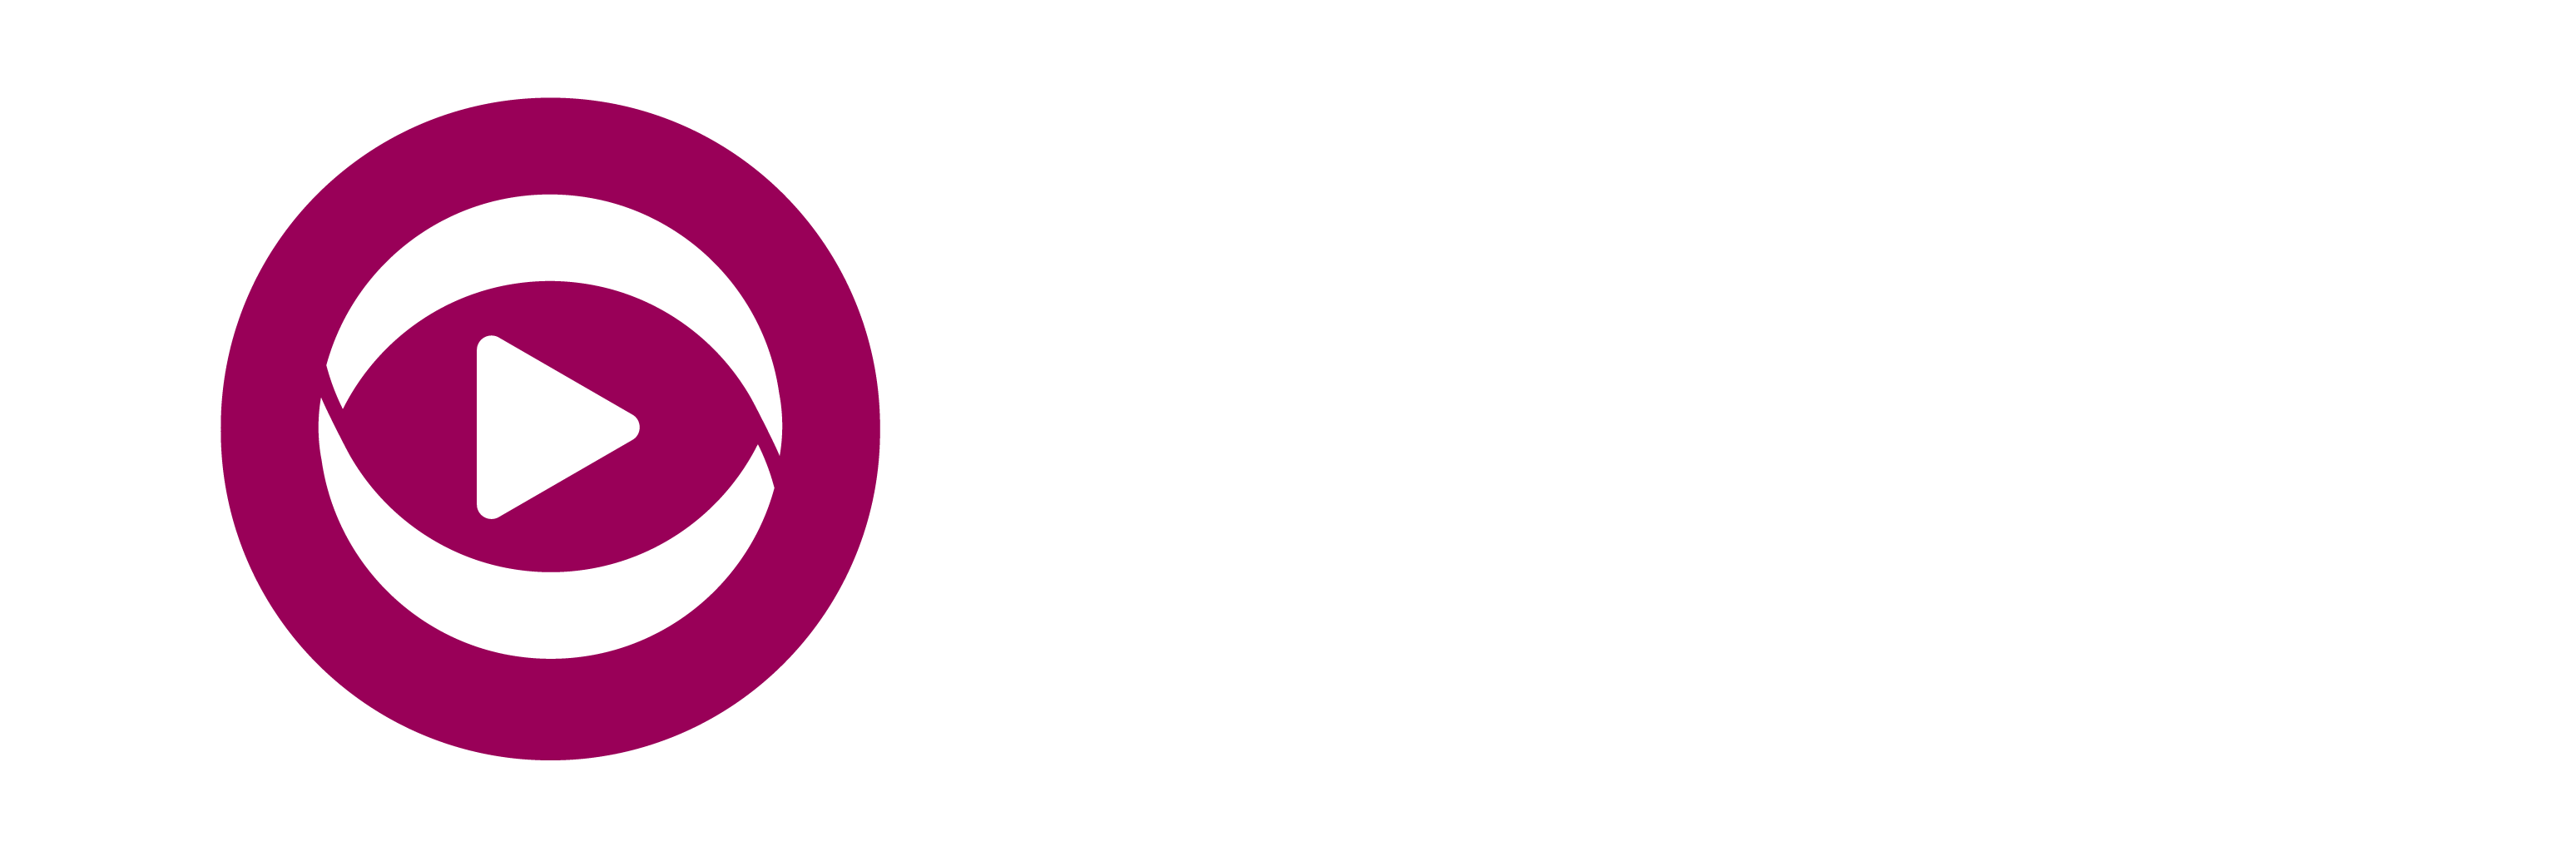 shofha_logo